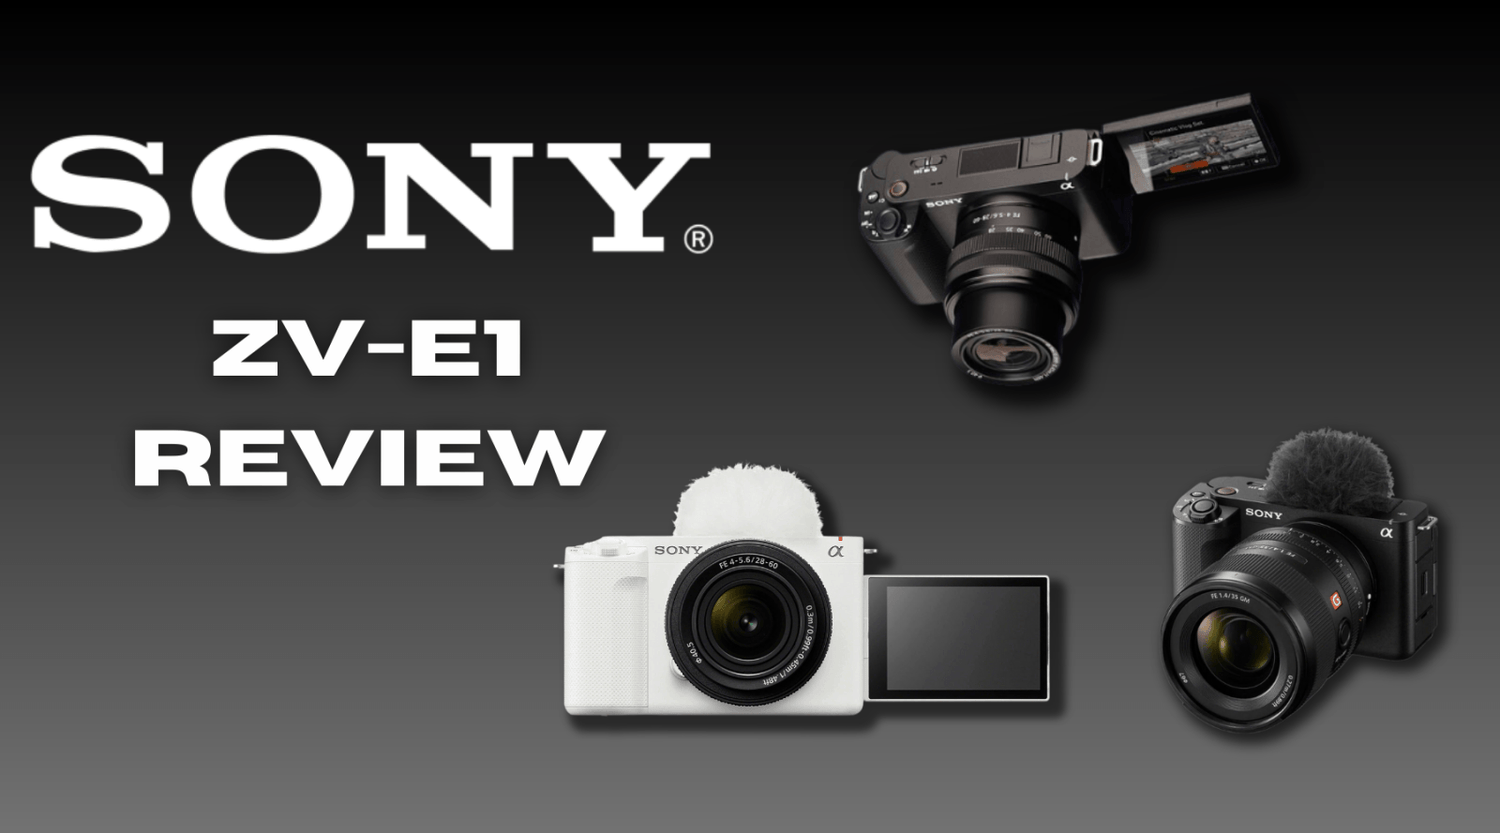 Sony ZV-E1 Review - Editors Keys